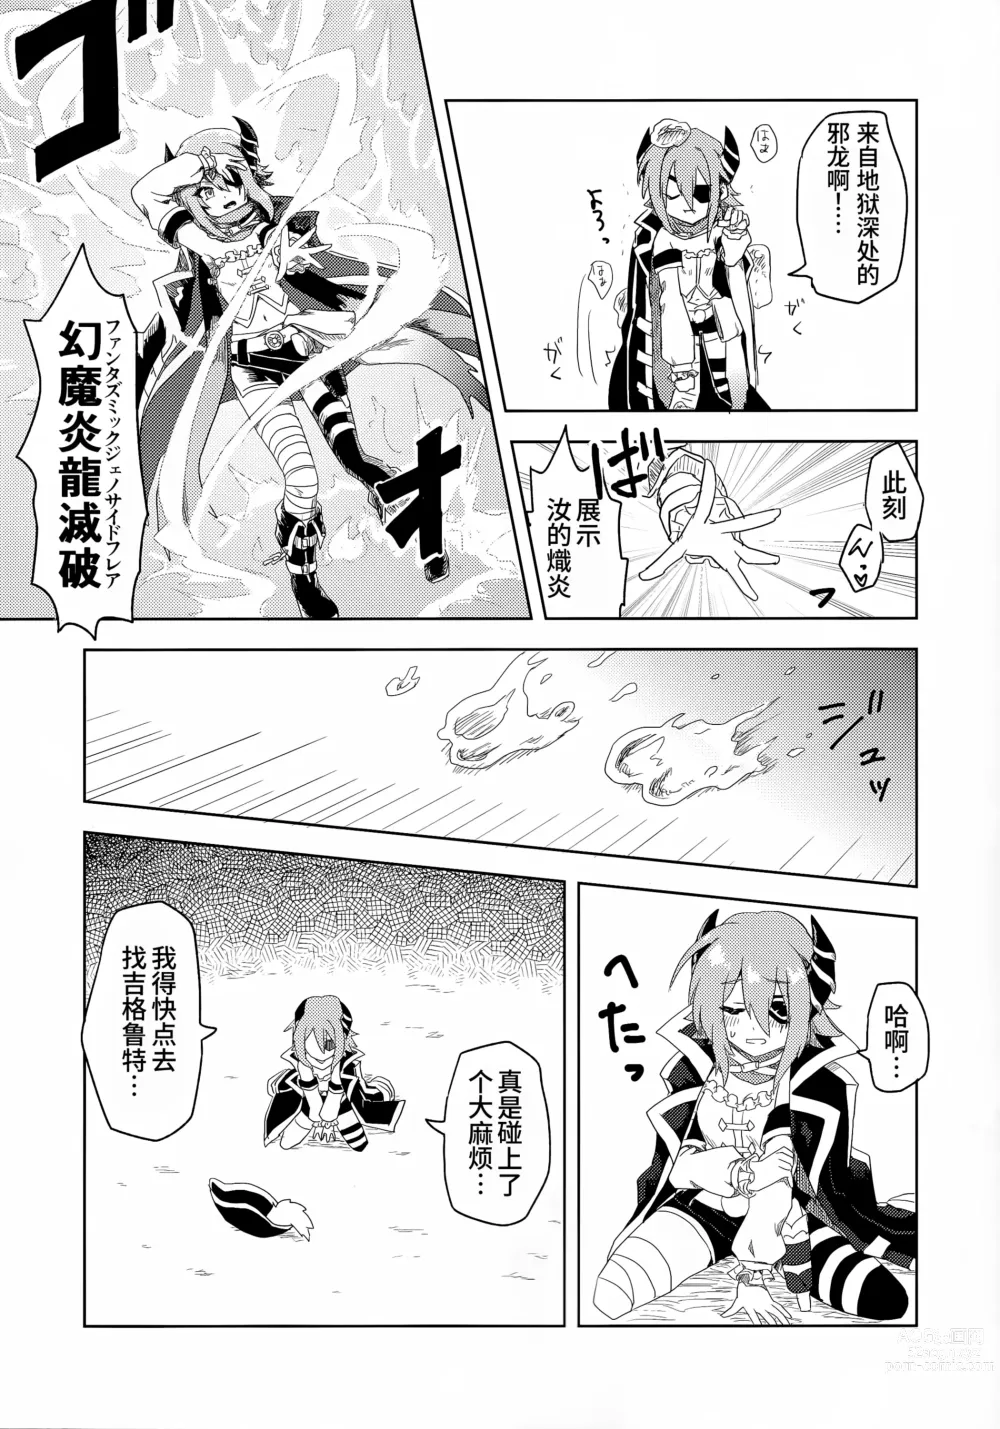 Page 7 of doujinshi 与杏奈一起色情陷阱迷宫冒险